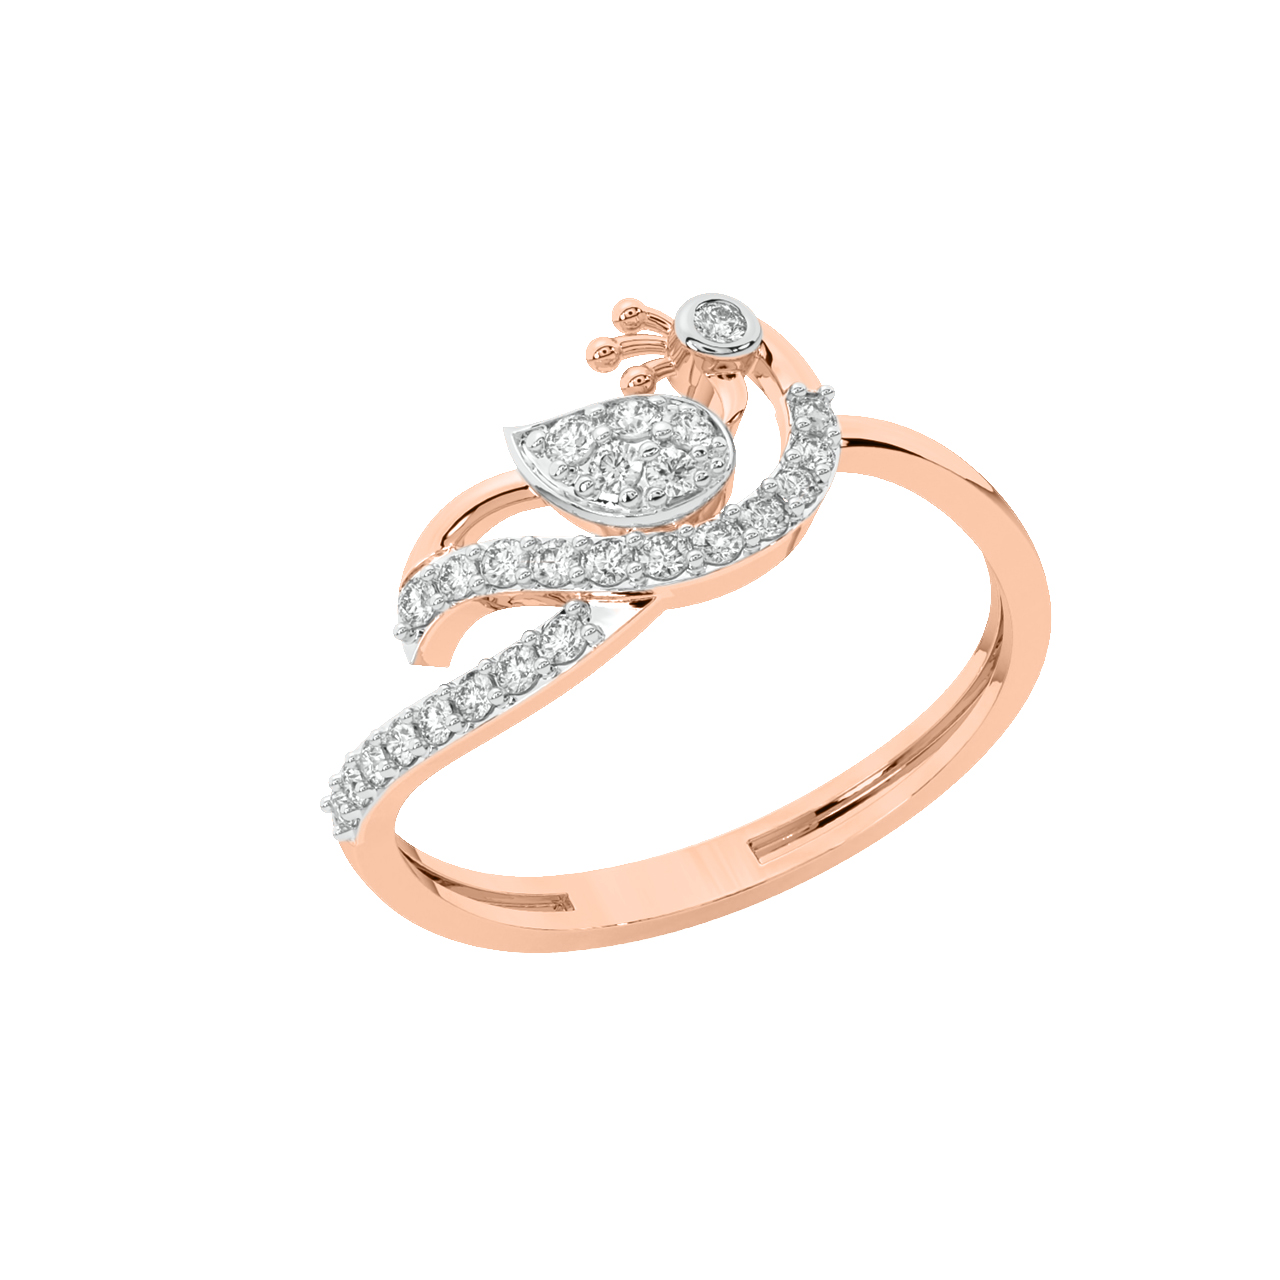 Anthony Diamond Engagement Ring